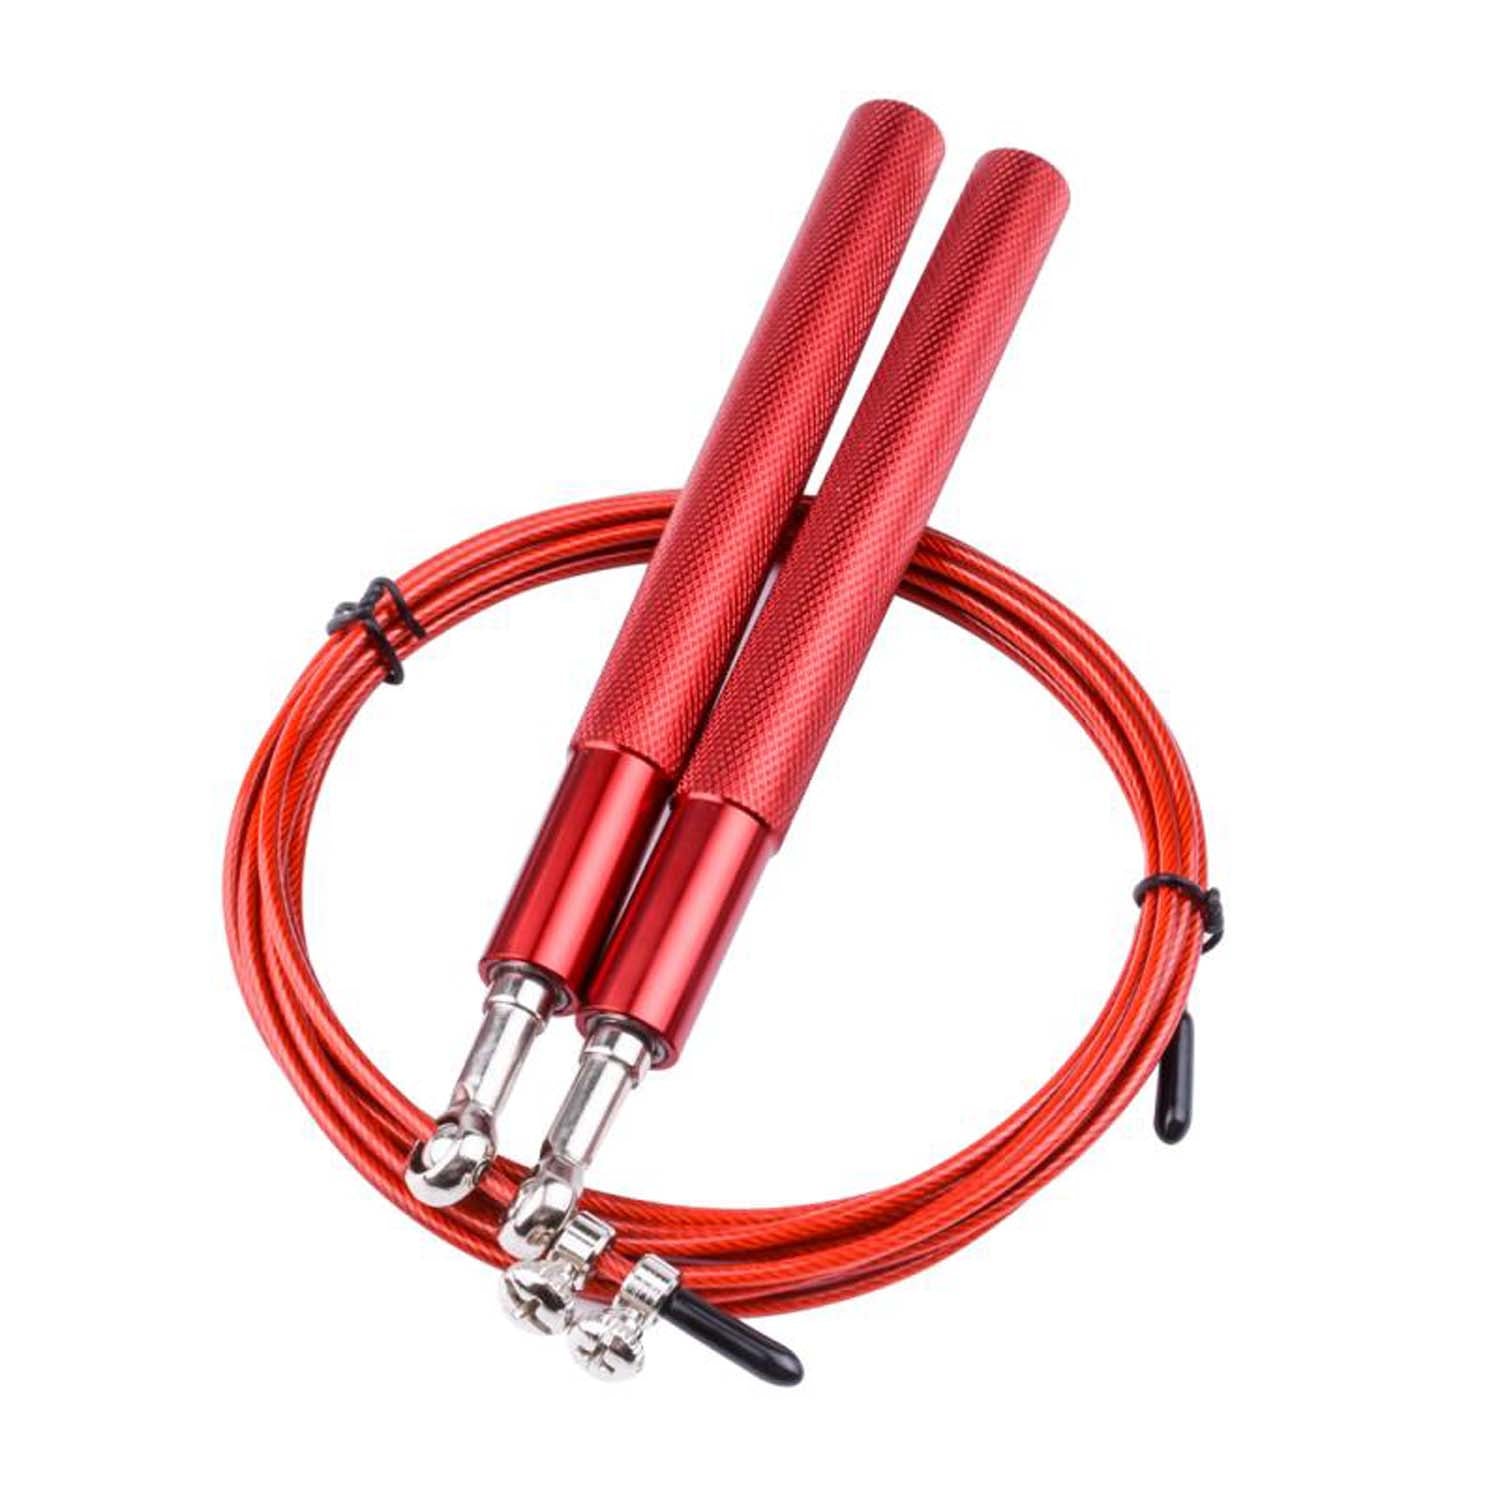 حبل نط من المعدن - طول قابل للتعديل بمقبض مستقيم - للكارديو و اللياقة البدنية - لون احمر - Kanteen - كانتين